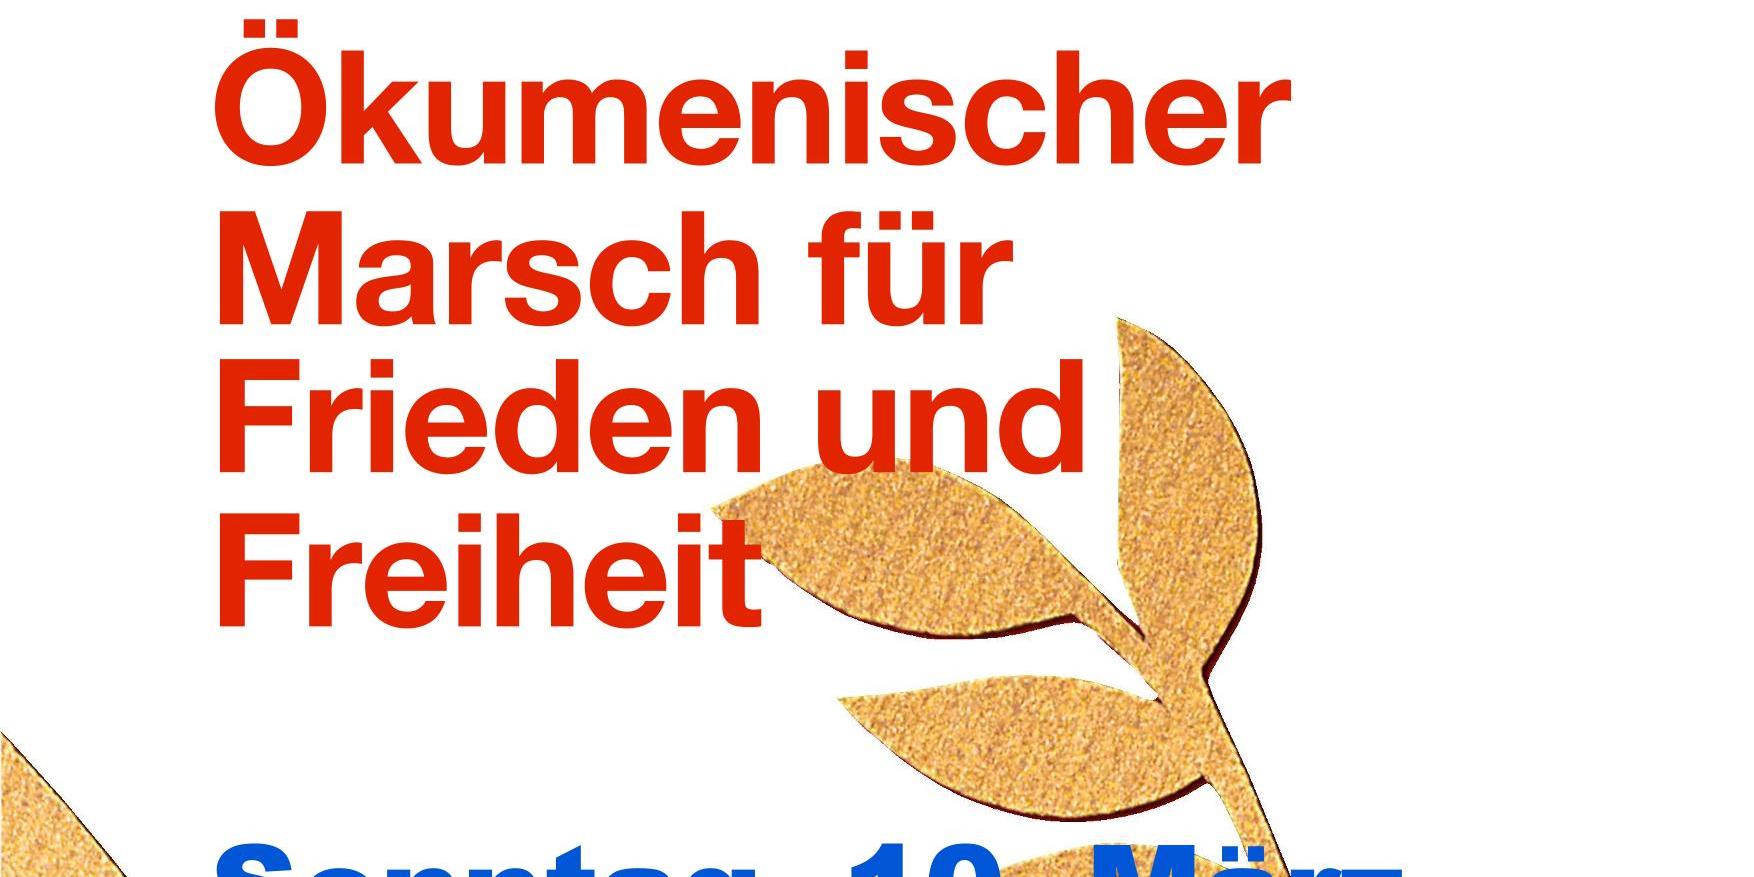 Plakat ökumenischer Marsch für den Frieden 10. März